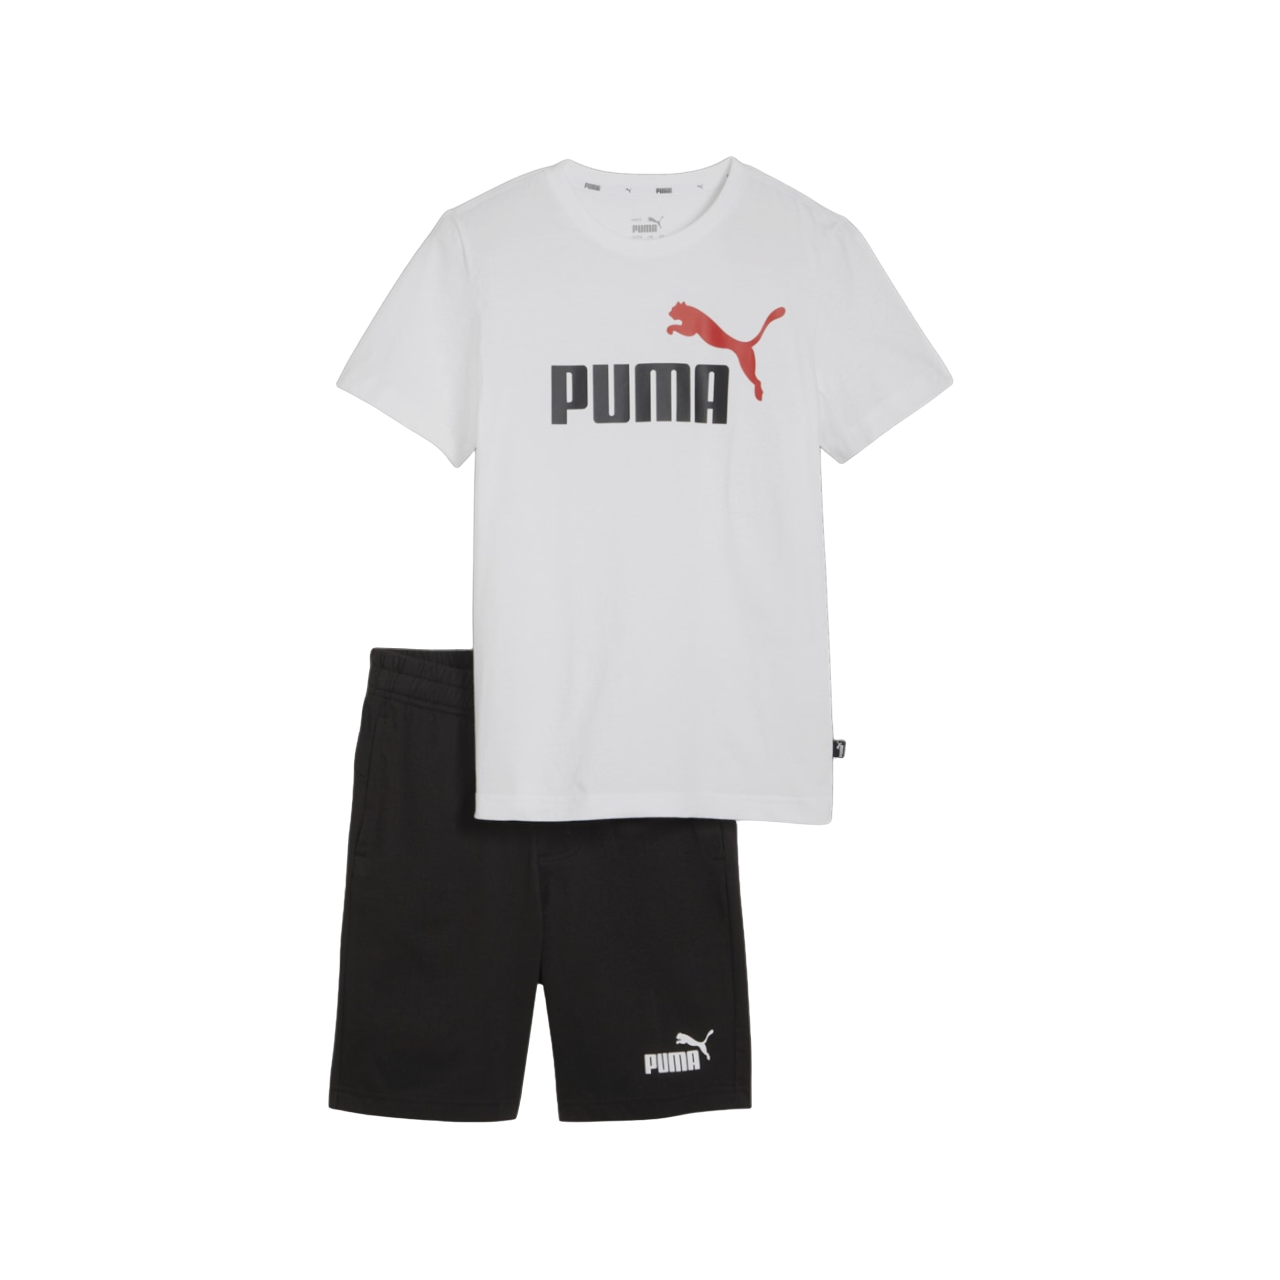 Puma completo maglietta e pantaloncino da ragazzo Jersey Set 847310-24 bianco-nero